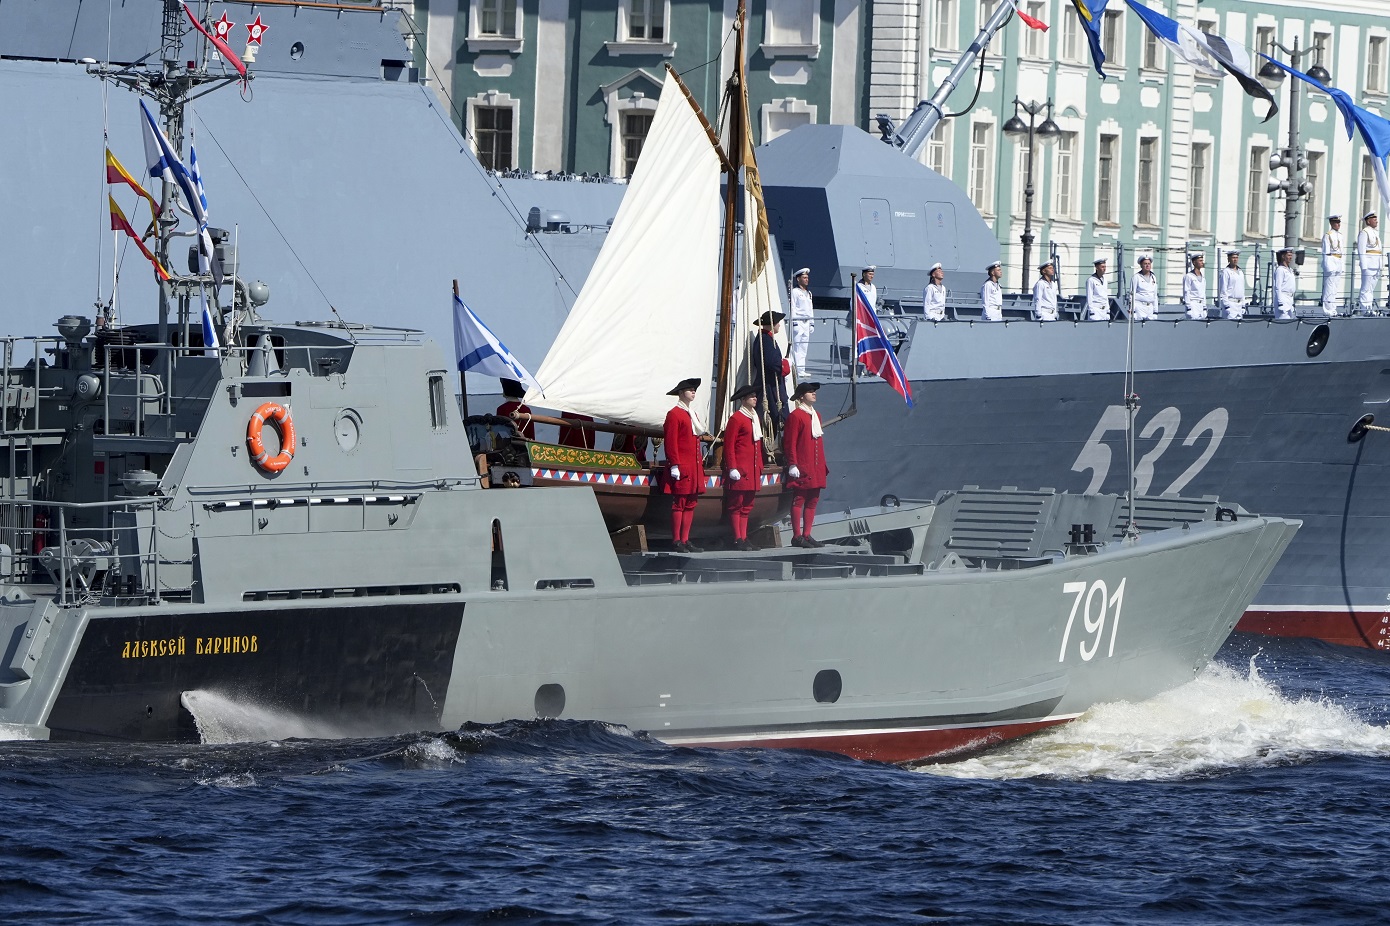 Η Ρωσία διεξάγει ναυτικές ασκήσεις με τη συμμετοχή 300 σκαφών και 20.000 και πλέον μελών πληρωμάτων